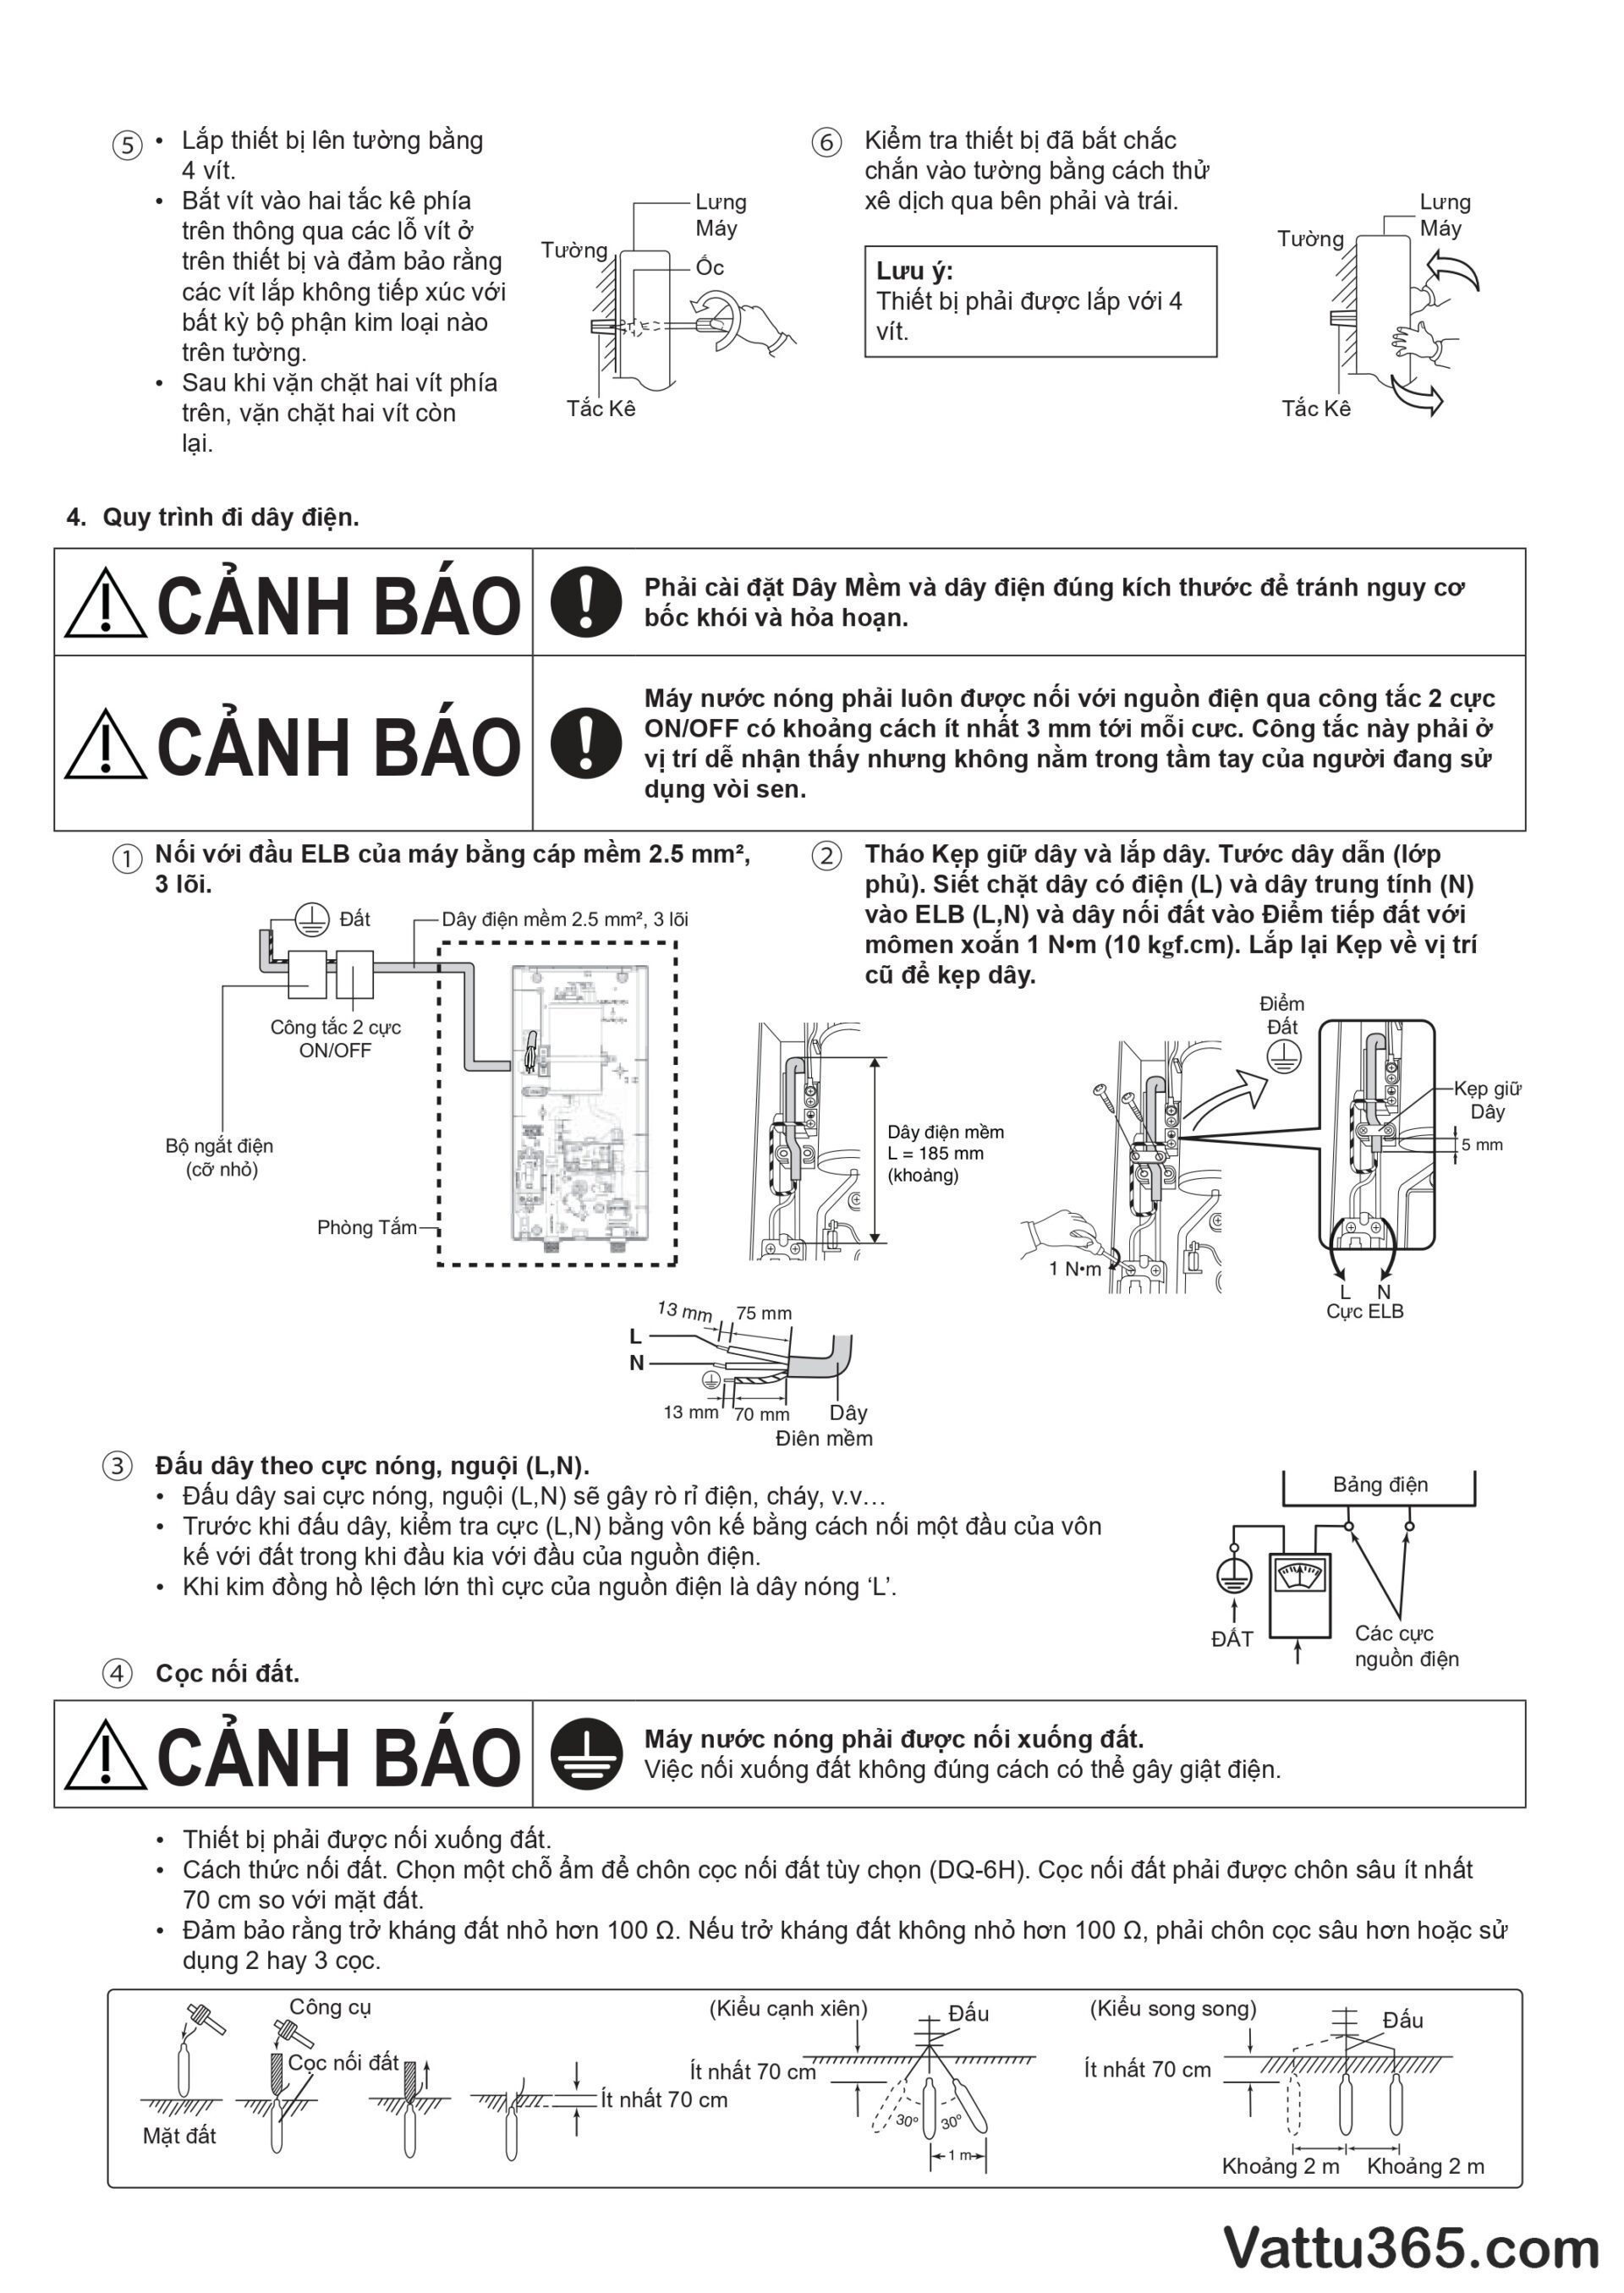 Hướng dẫn sử dụng và lắp đặt máy nước nóng Panasonic V-Series - Trang 13/16